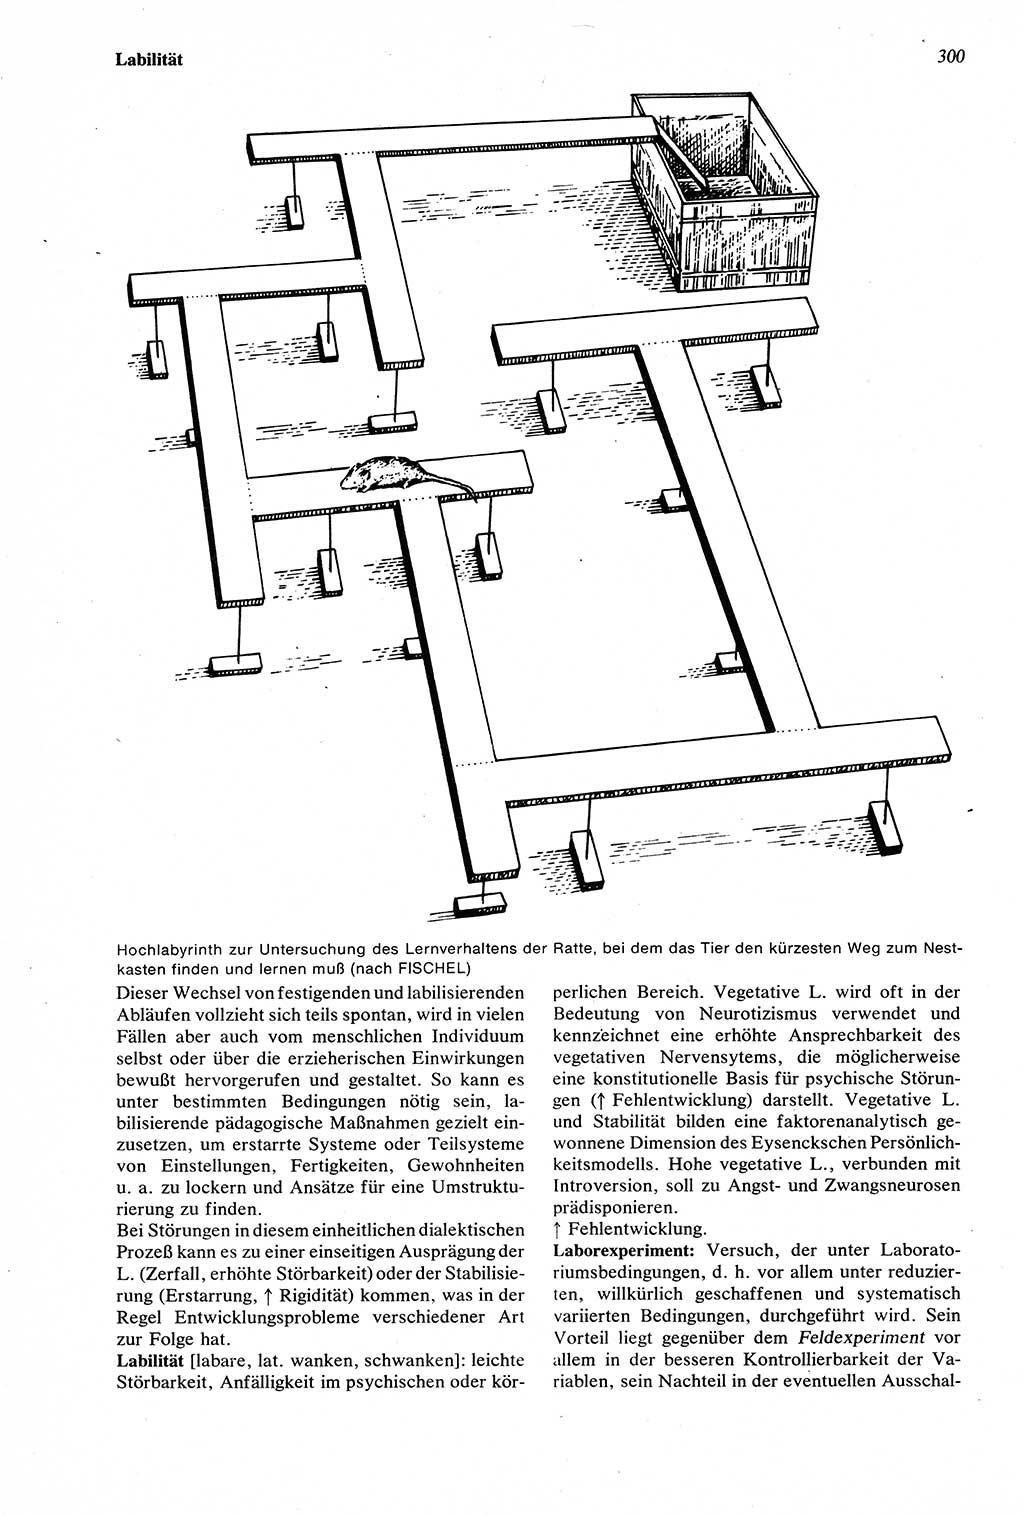 Wörterbuch der Psychologie [Deutsche Demokratische Republik (DDR)] 1976, Seite 300 (Wb. Psych. DDR 1976, S. 300)